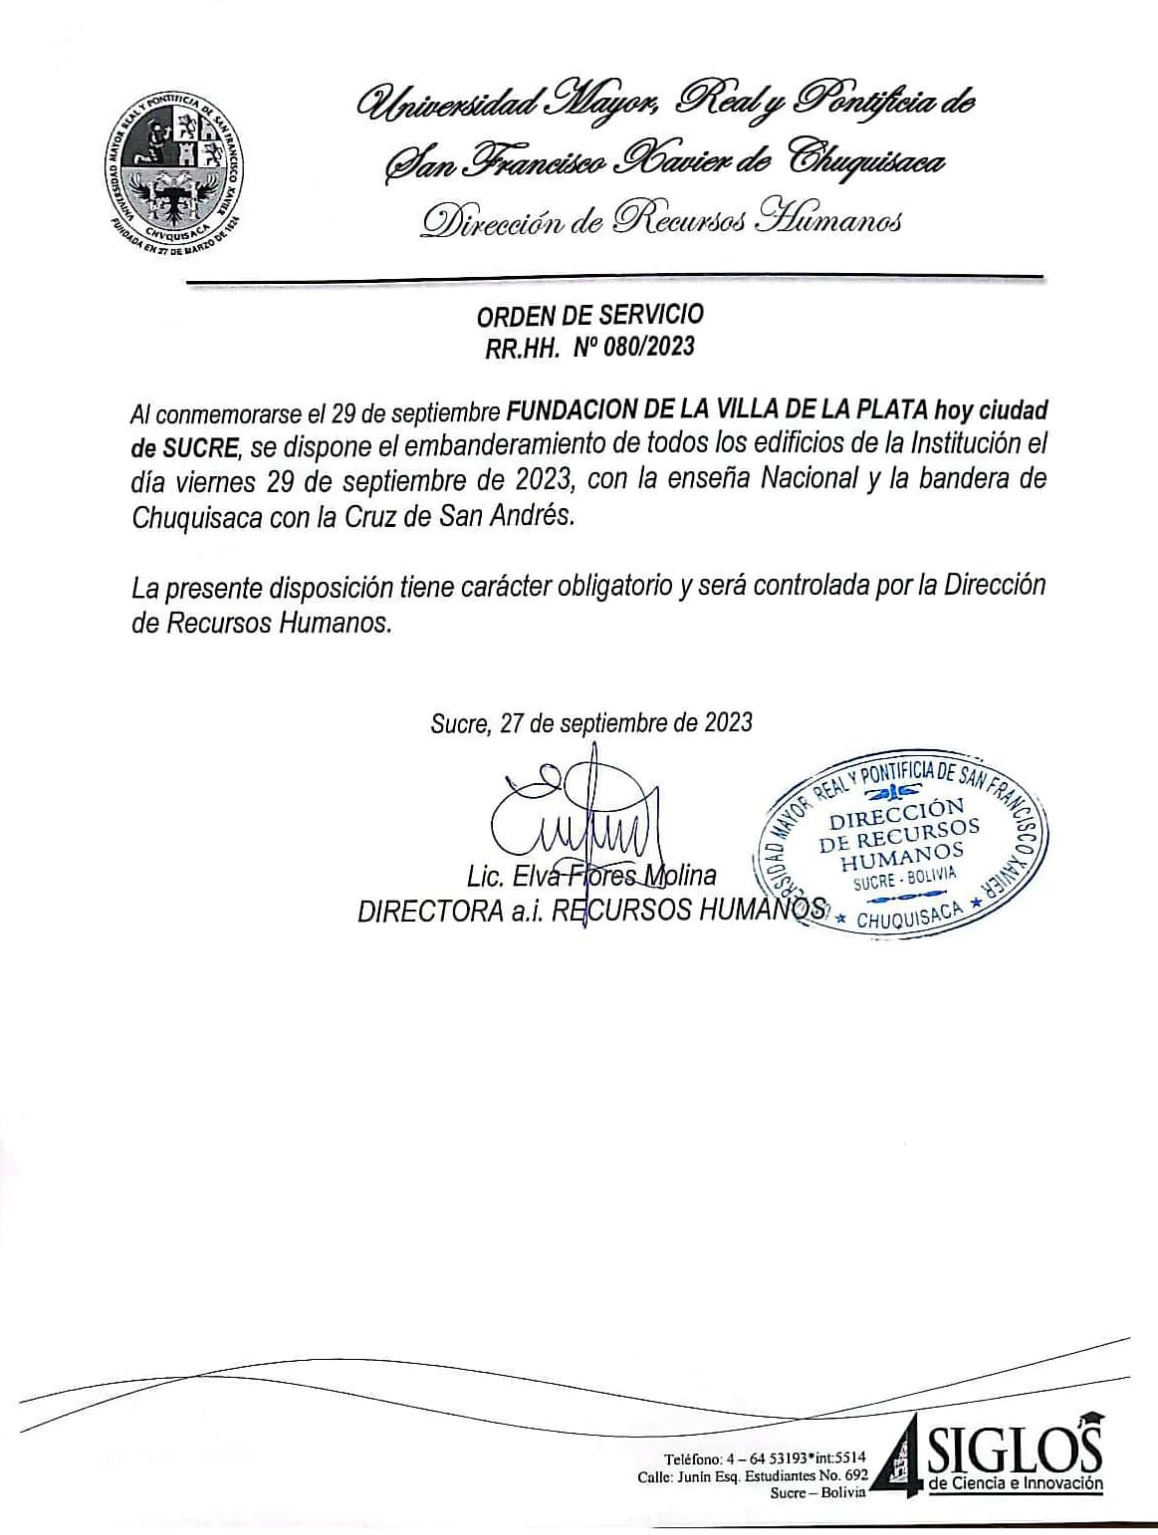 ORDEN DE SERVICIO RR.HH. Nº 080/2023, EMBANDERAMIENTO FUNDACIÓN  VILLA DE LA PLATA